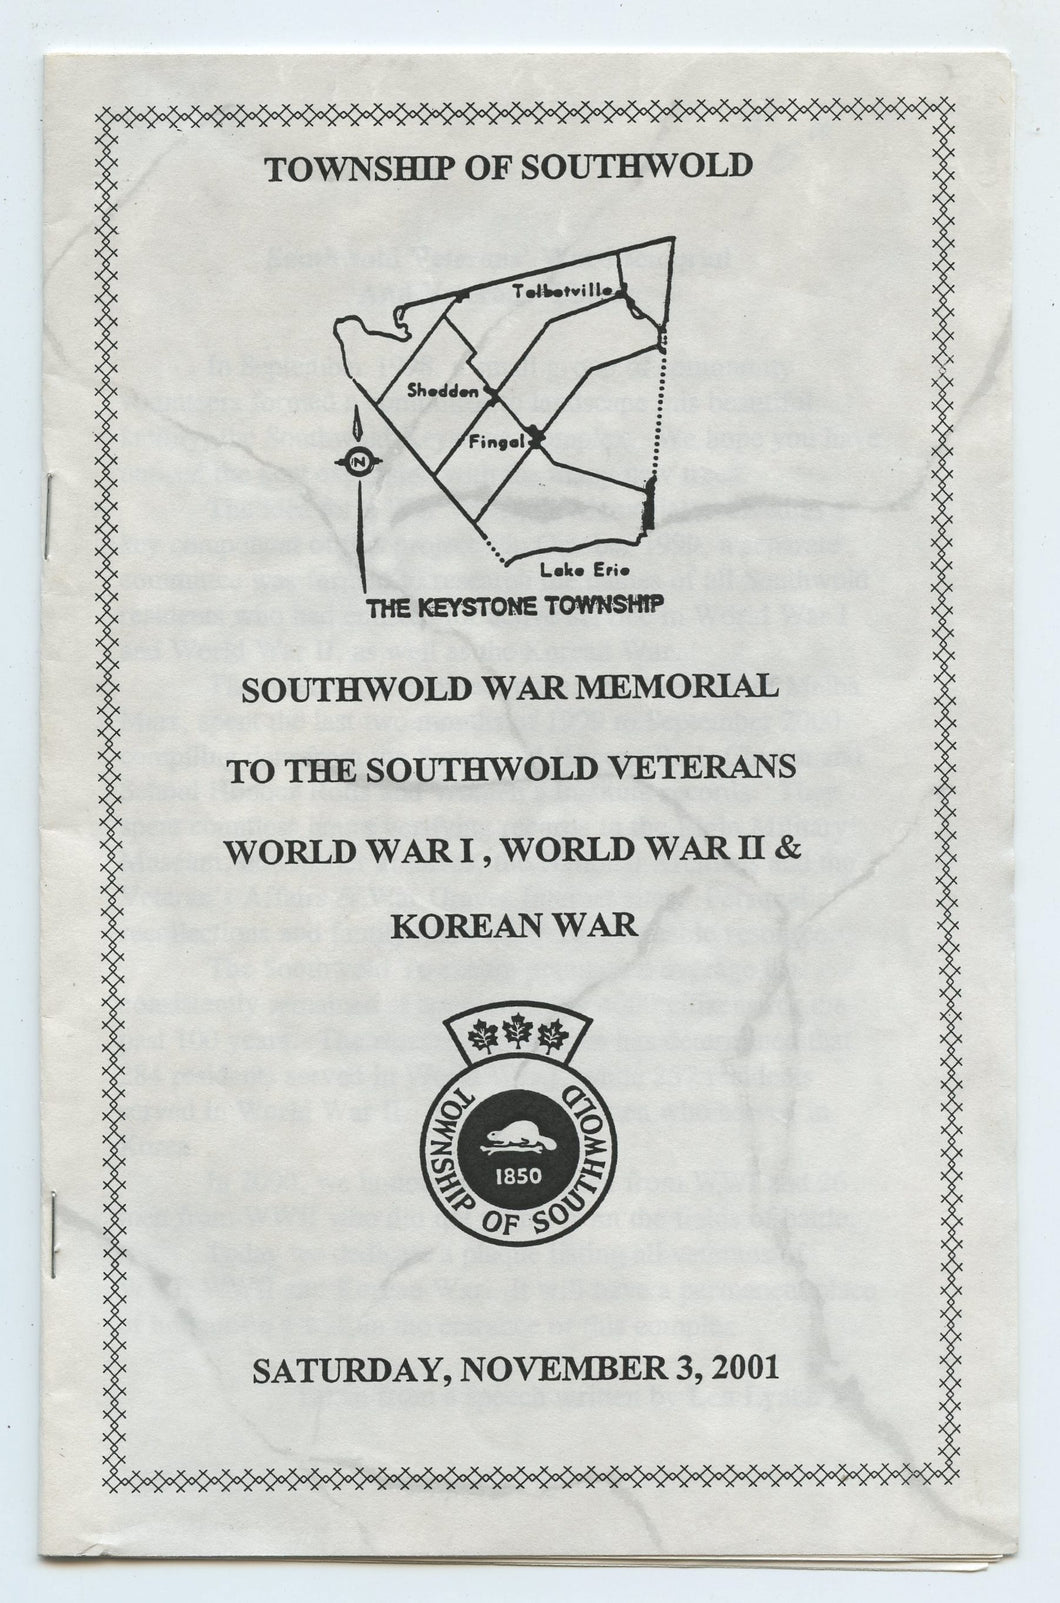 Southwold War Memorial to the Southwold Veterans World War I, World War II & Korean War